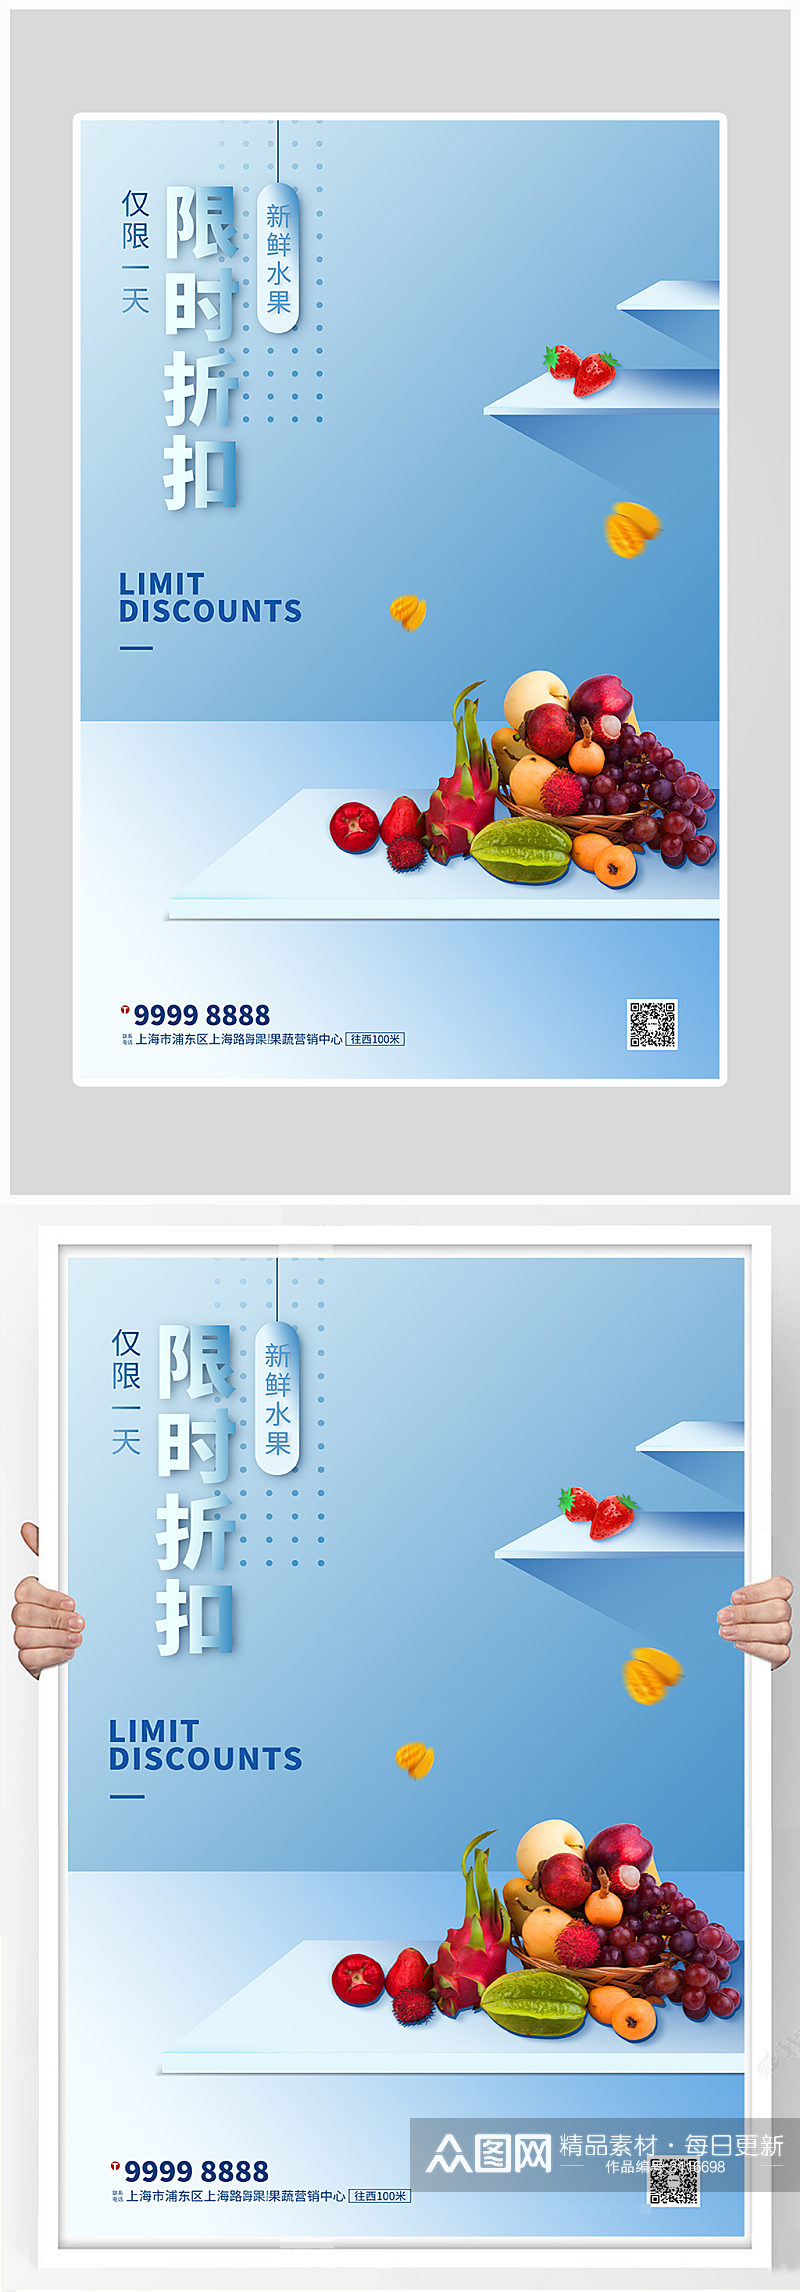 创意唯美新鲜水果海报设计素材